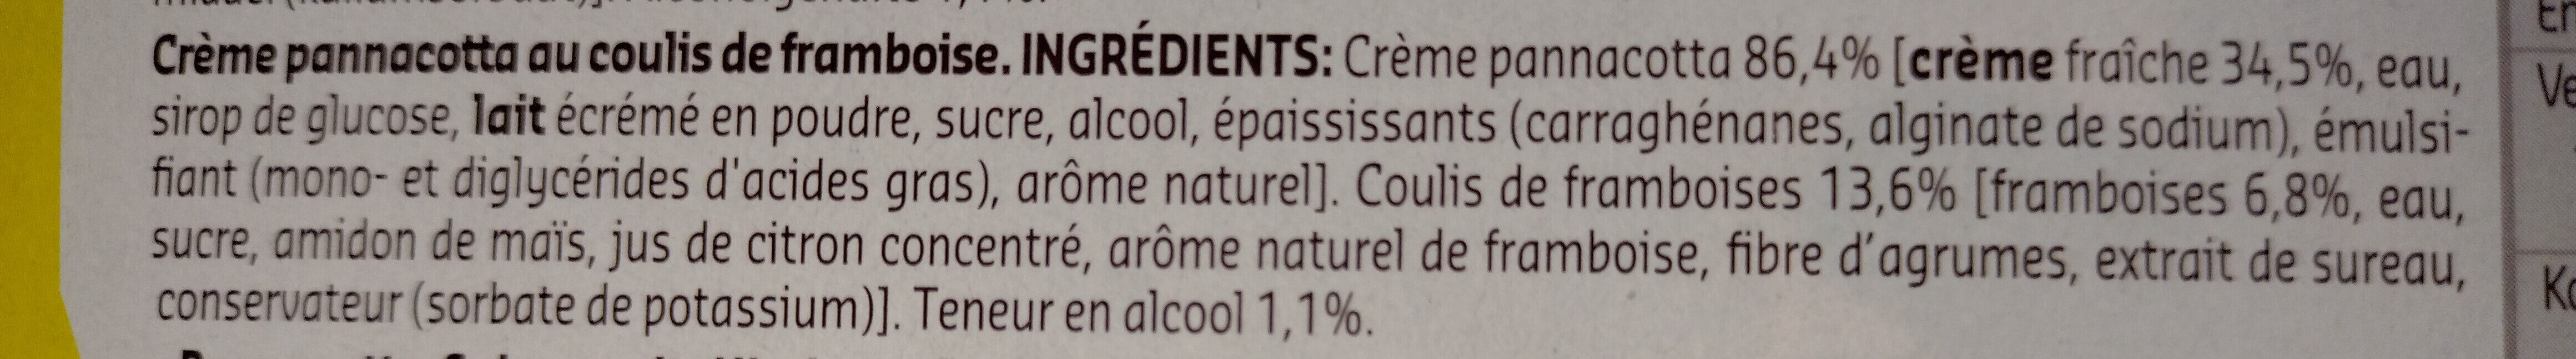 Panna cotta - Ingrediënten - fr